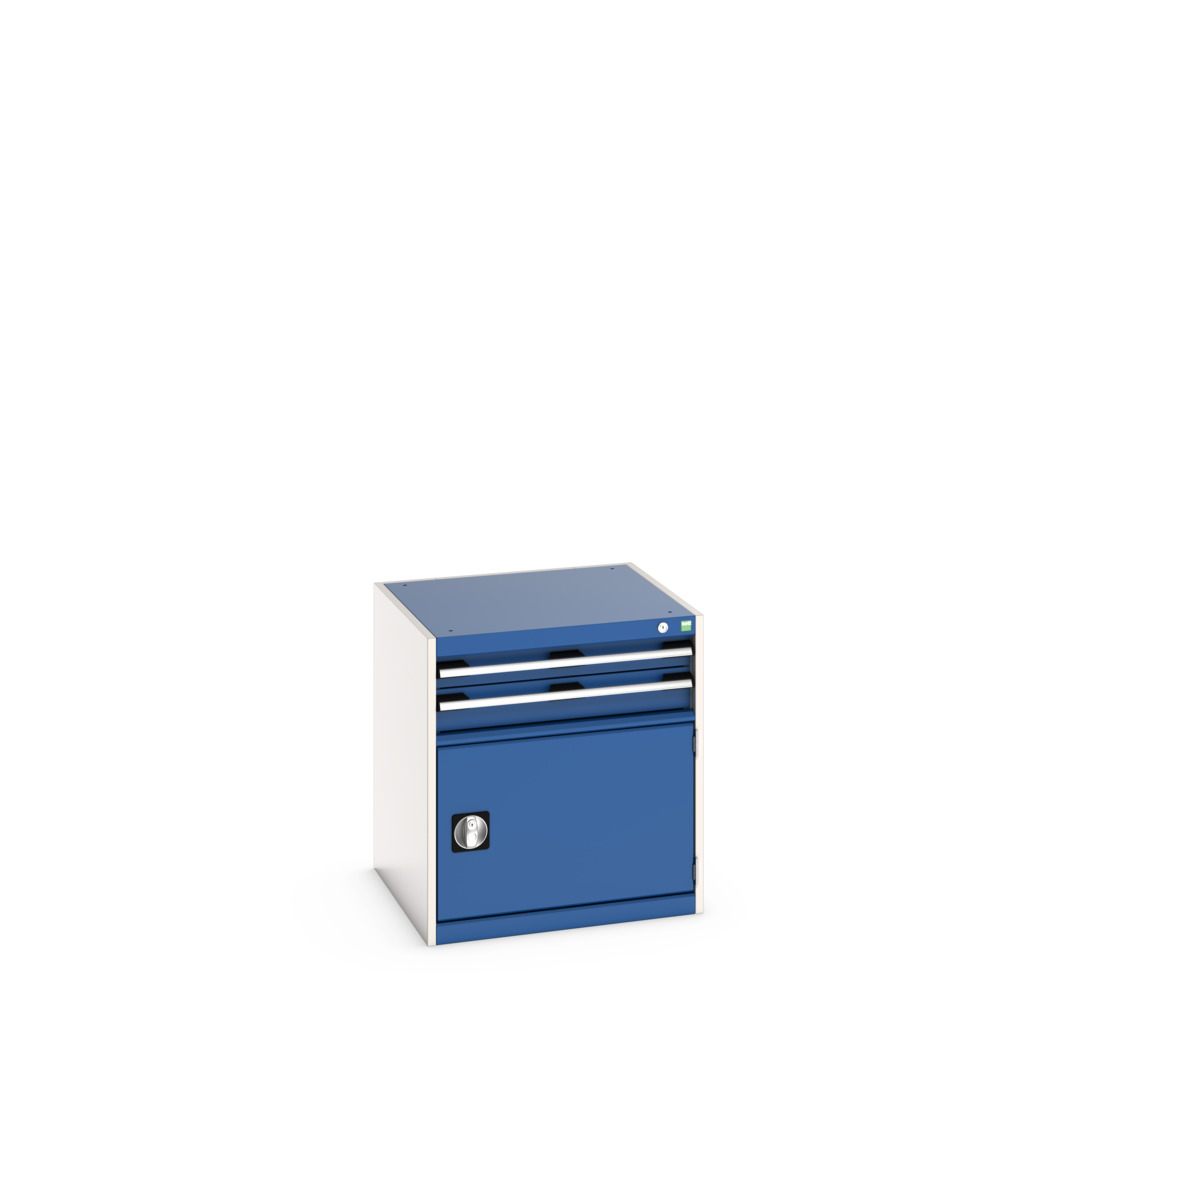 40019021.11V - cubio drawer-door cabinet